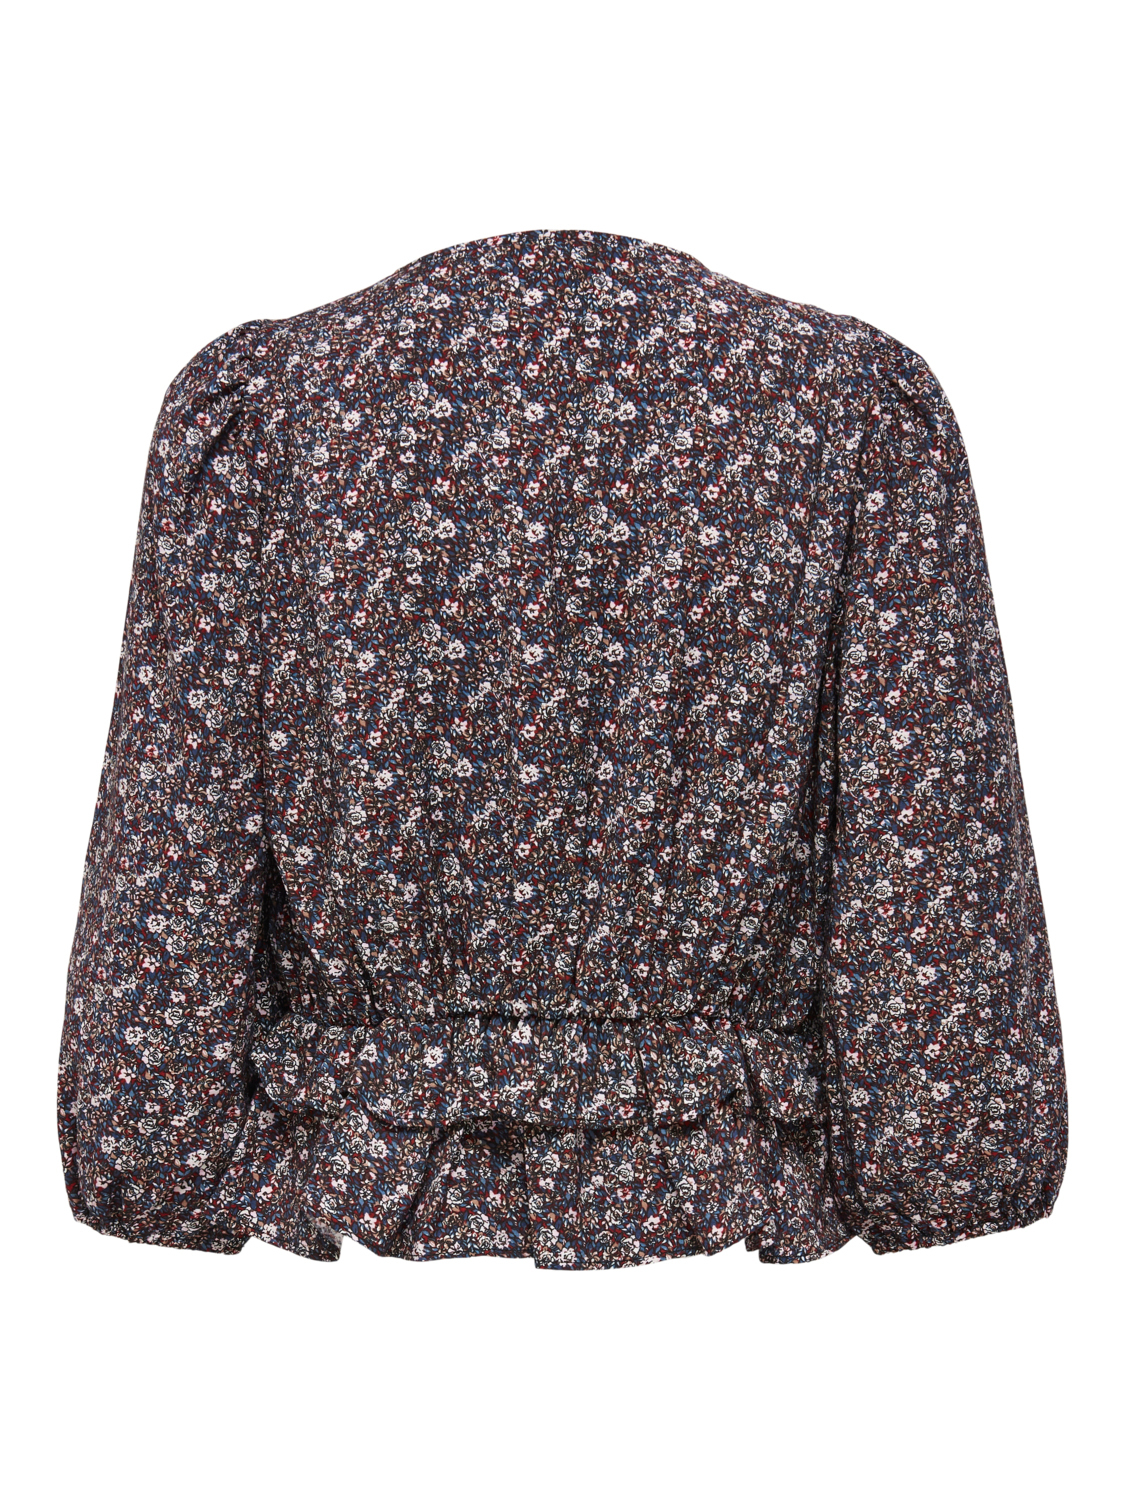 Odzież Kobiety ONLY Bluzka Candy w kolorze Jasnobrązowym 